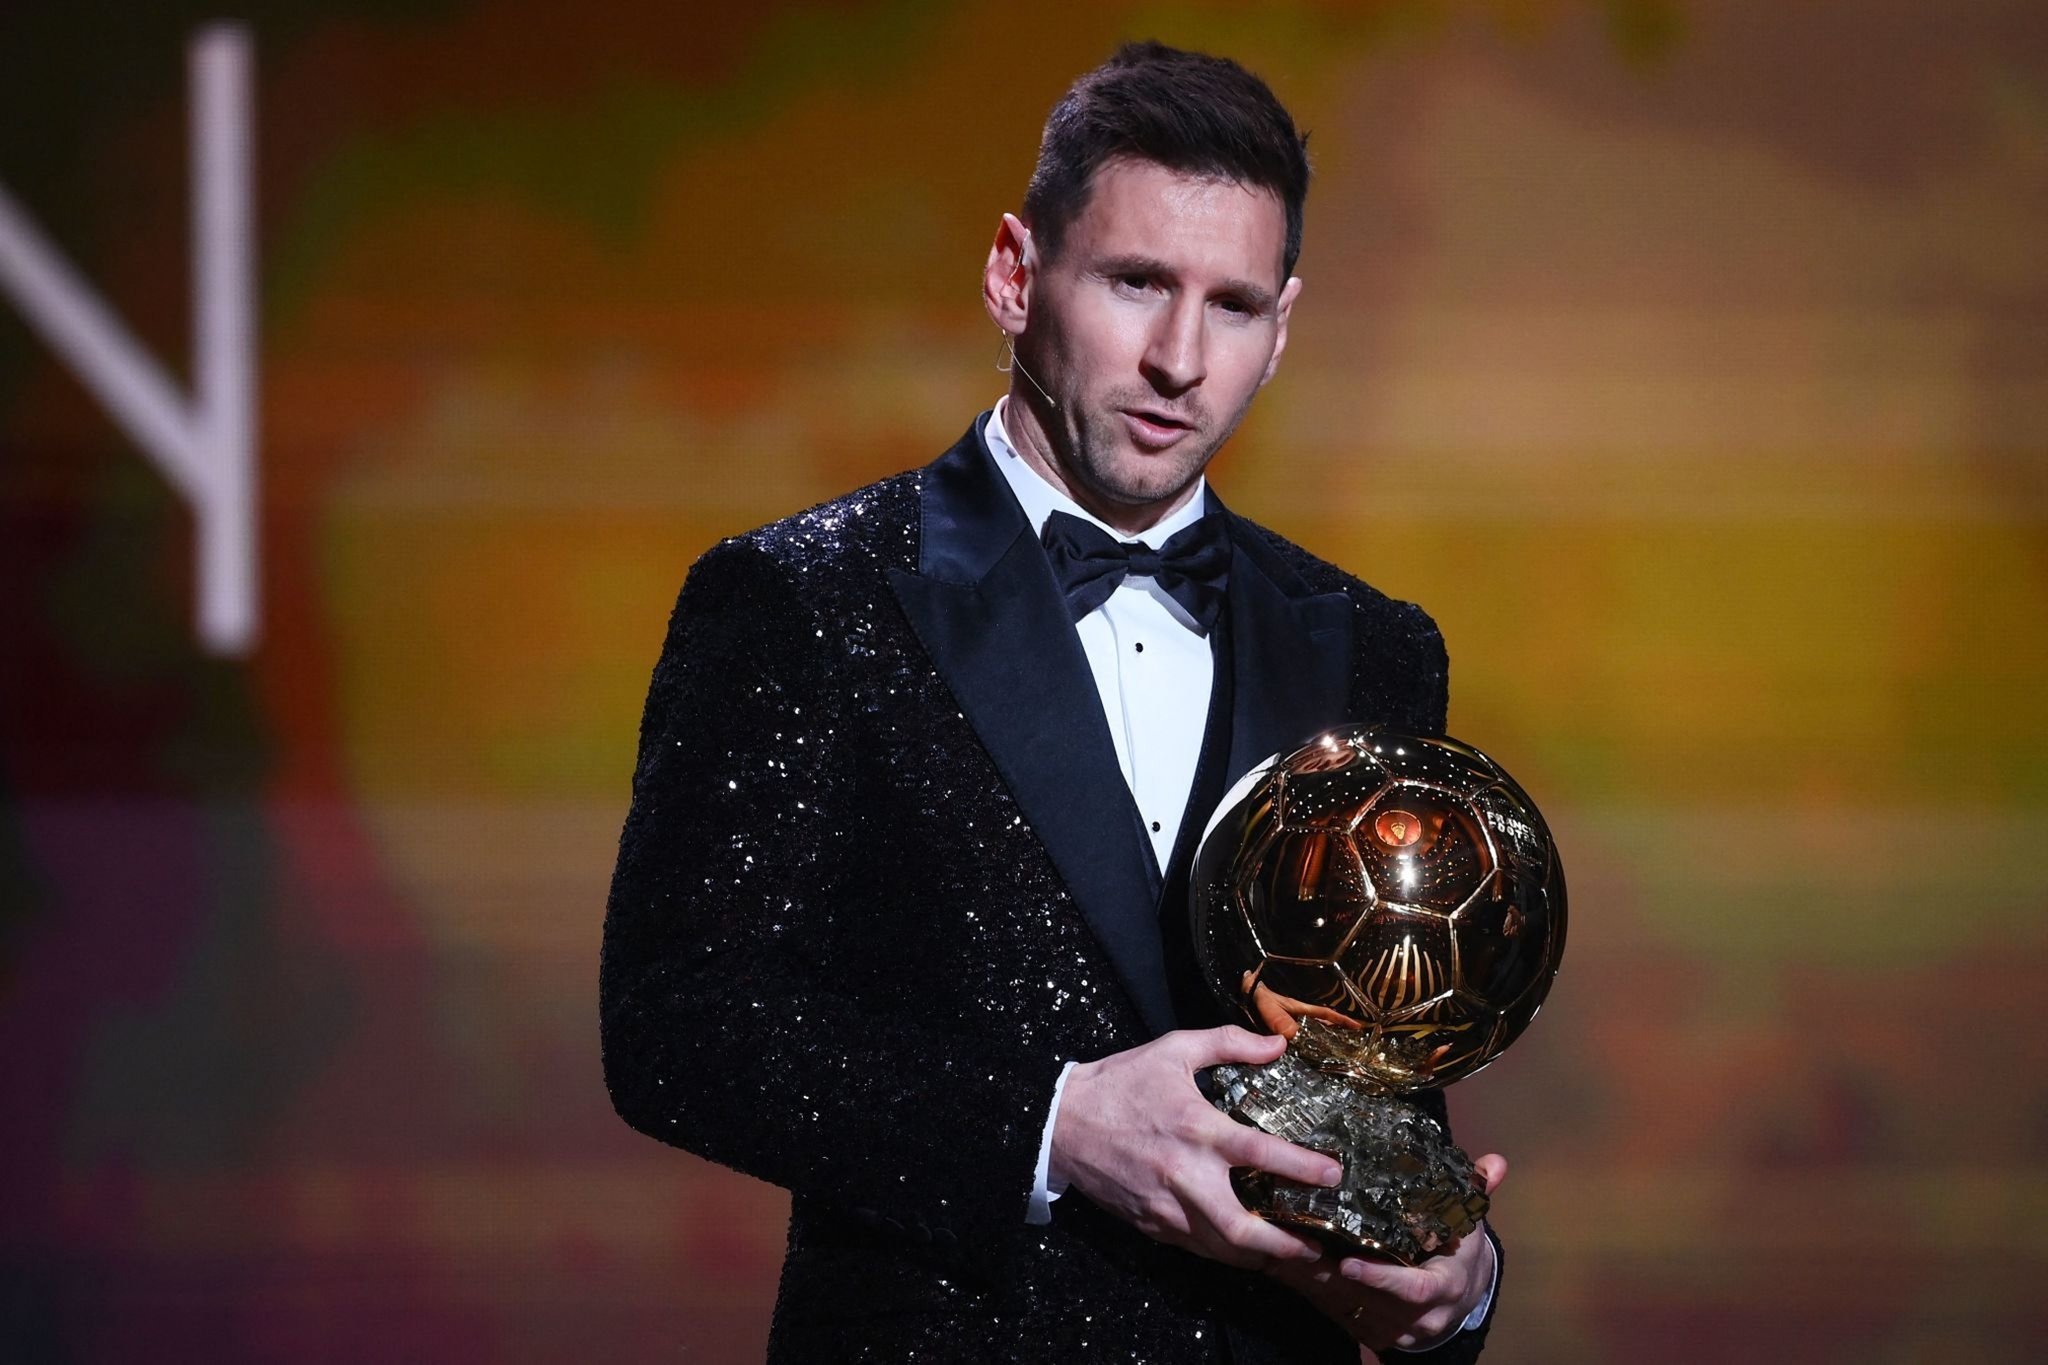 Lionel Messi sacré, Salah 7e, le classement complet du Ballon d’or 2021